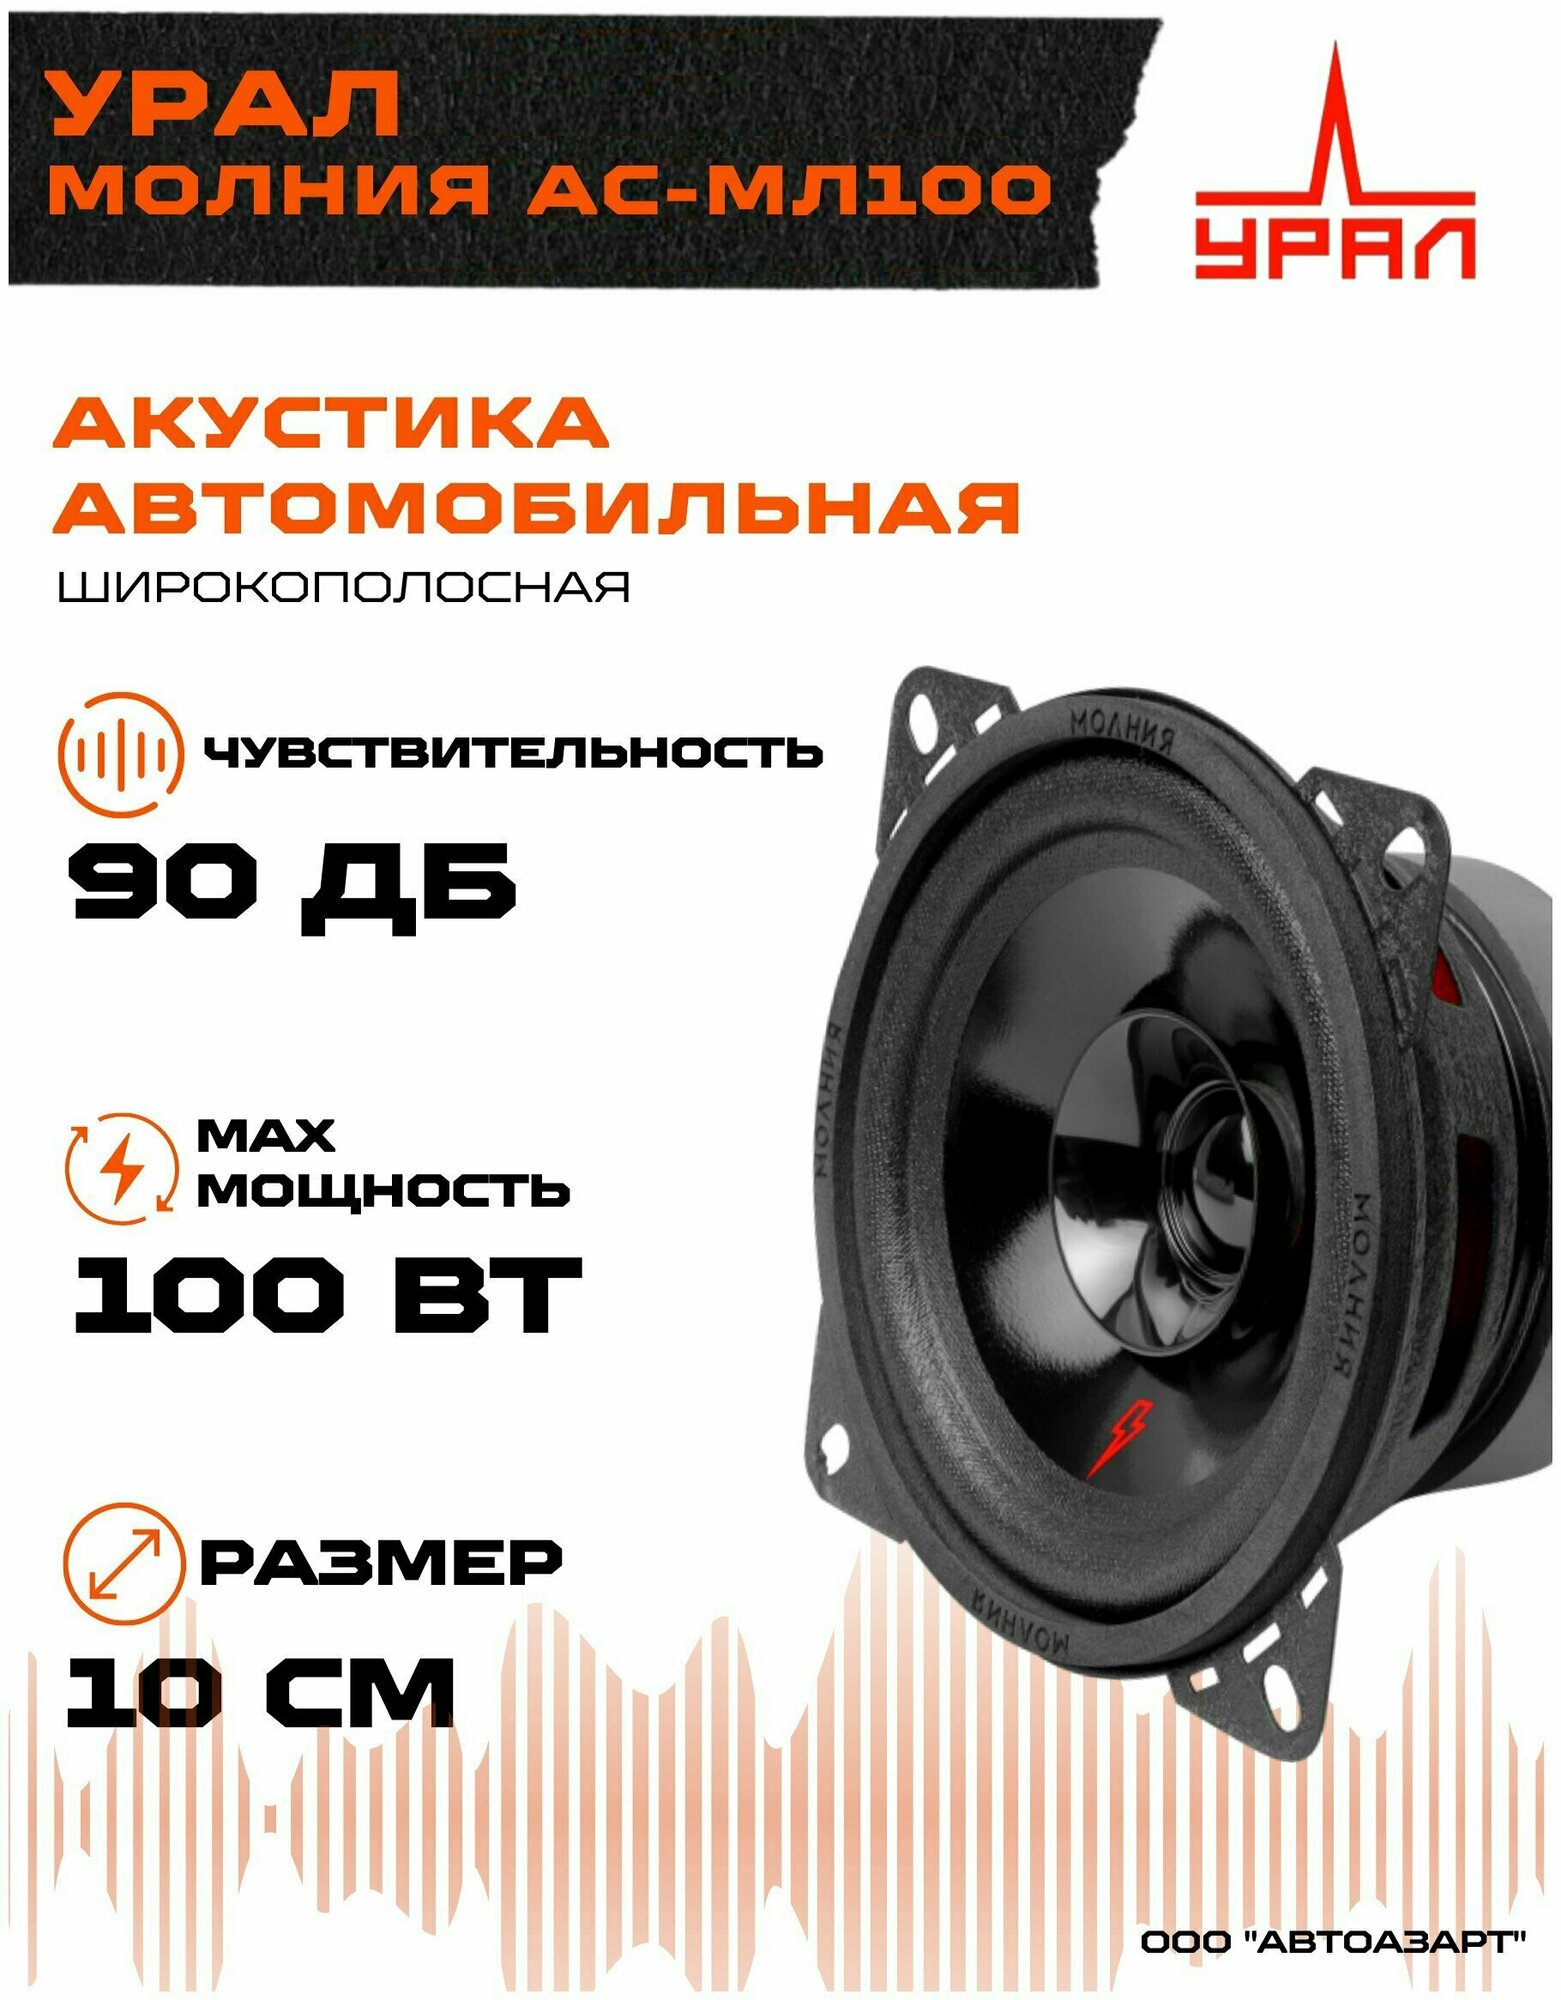 Акустическая система Ural урал молния АС-МЛ100